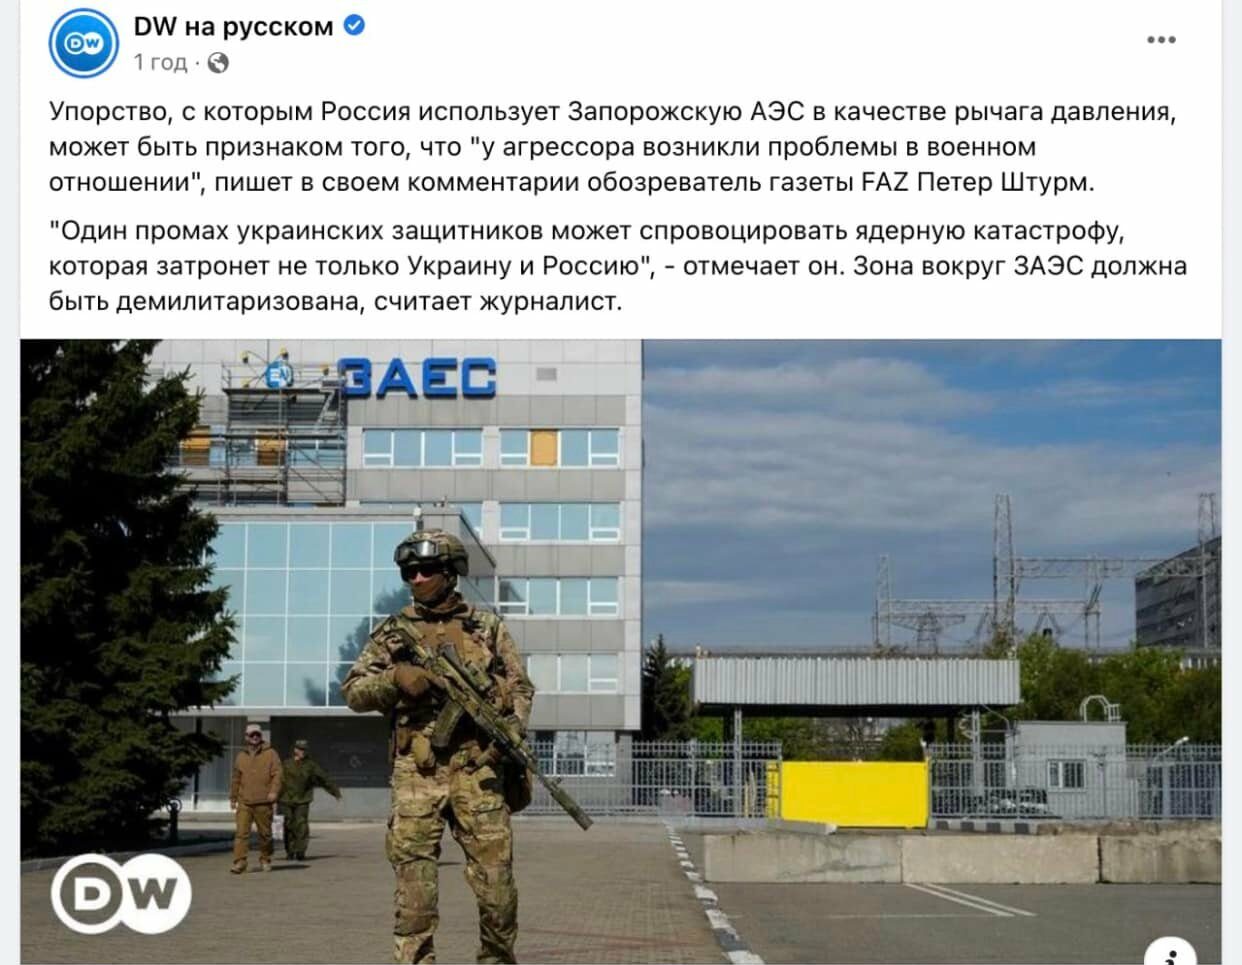 Російська служба Deutsche Welle підіграє пропаганді РФ — МЗС України